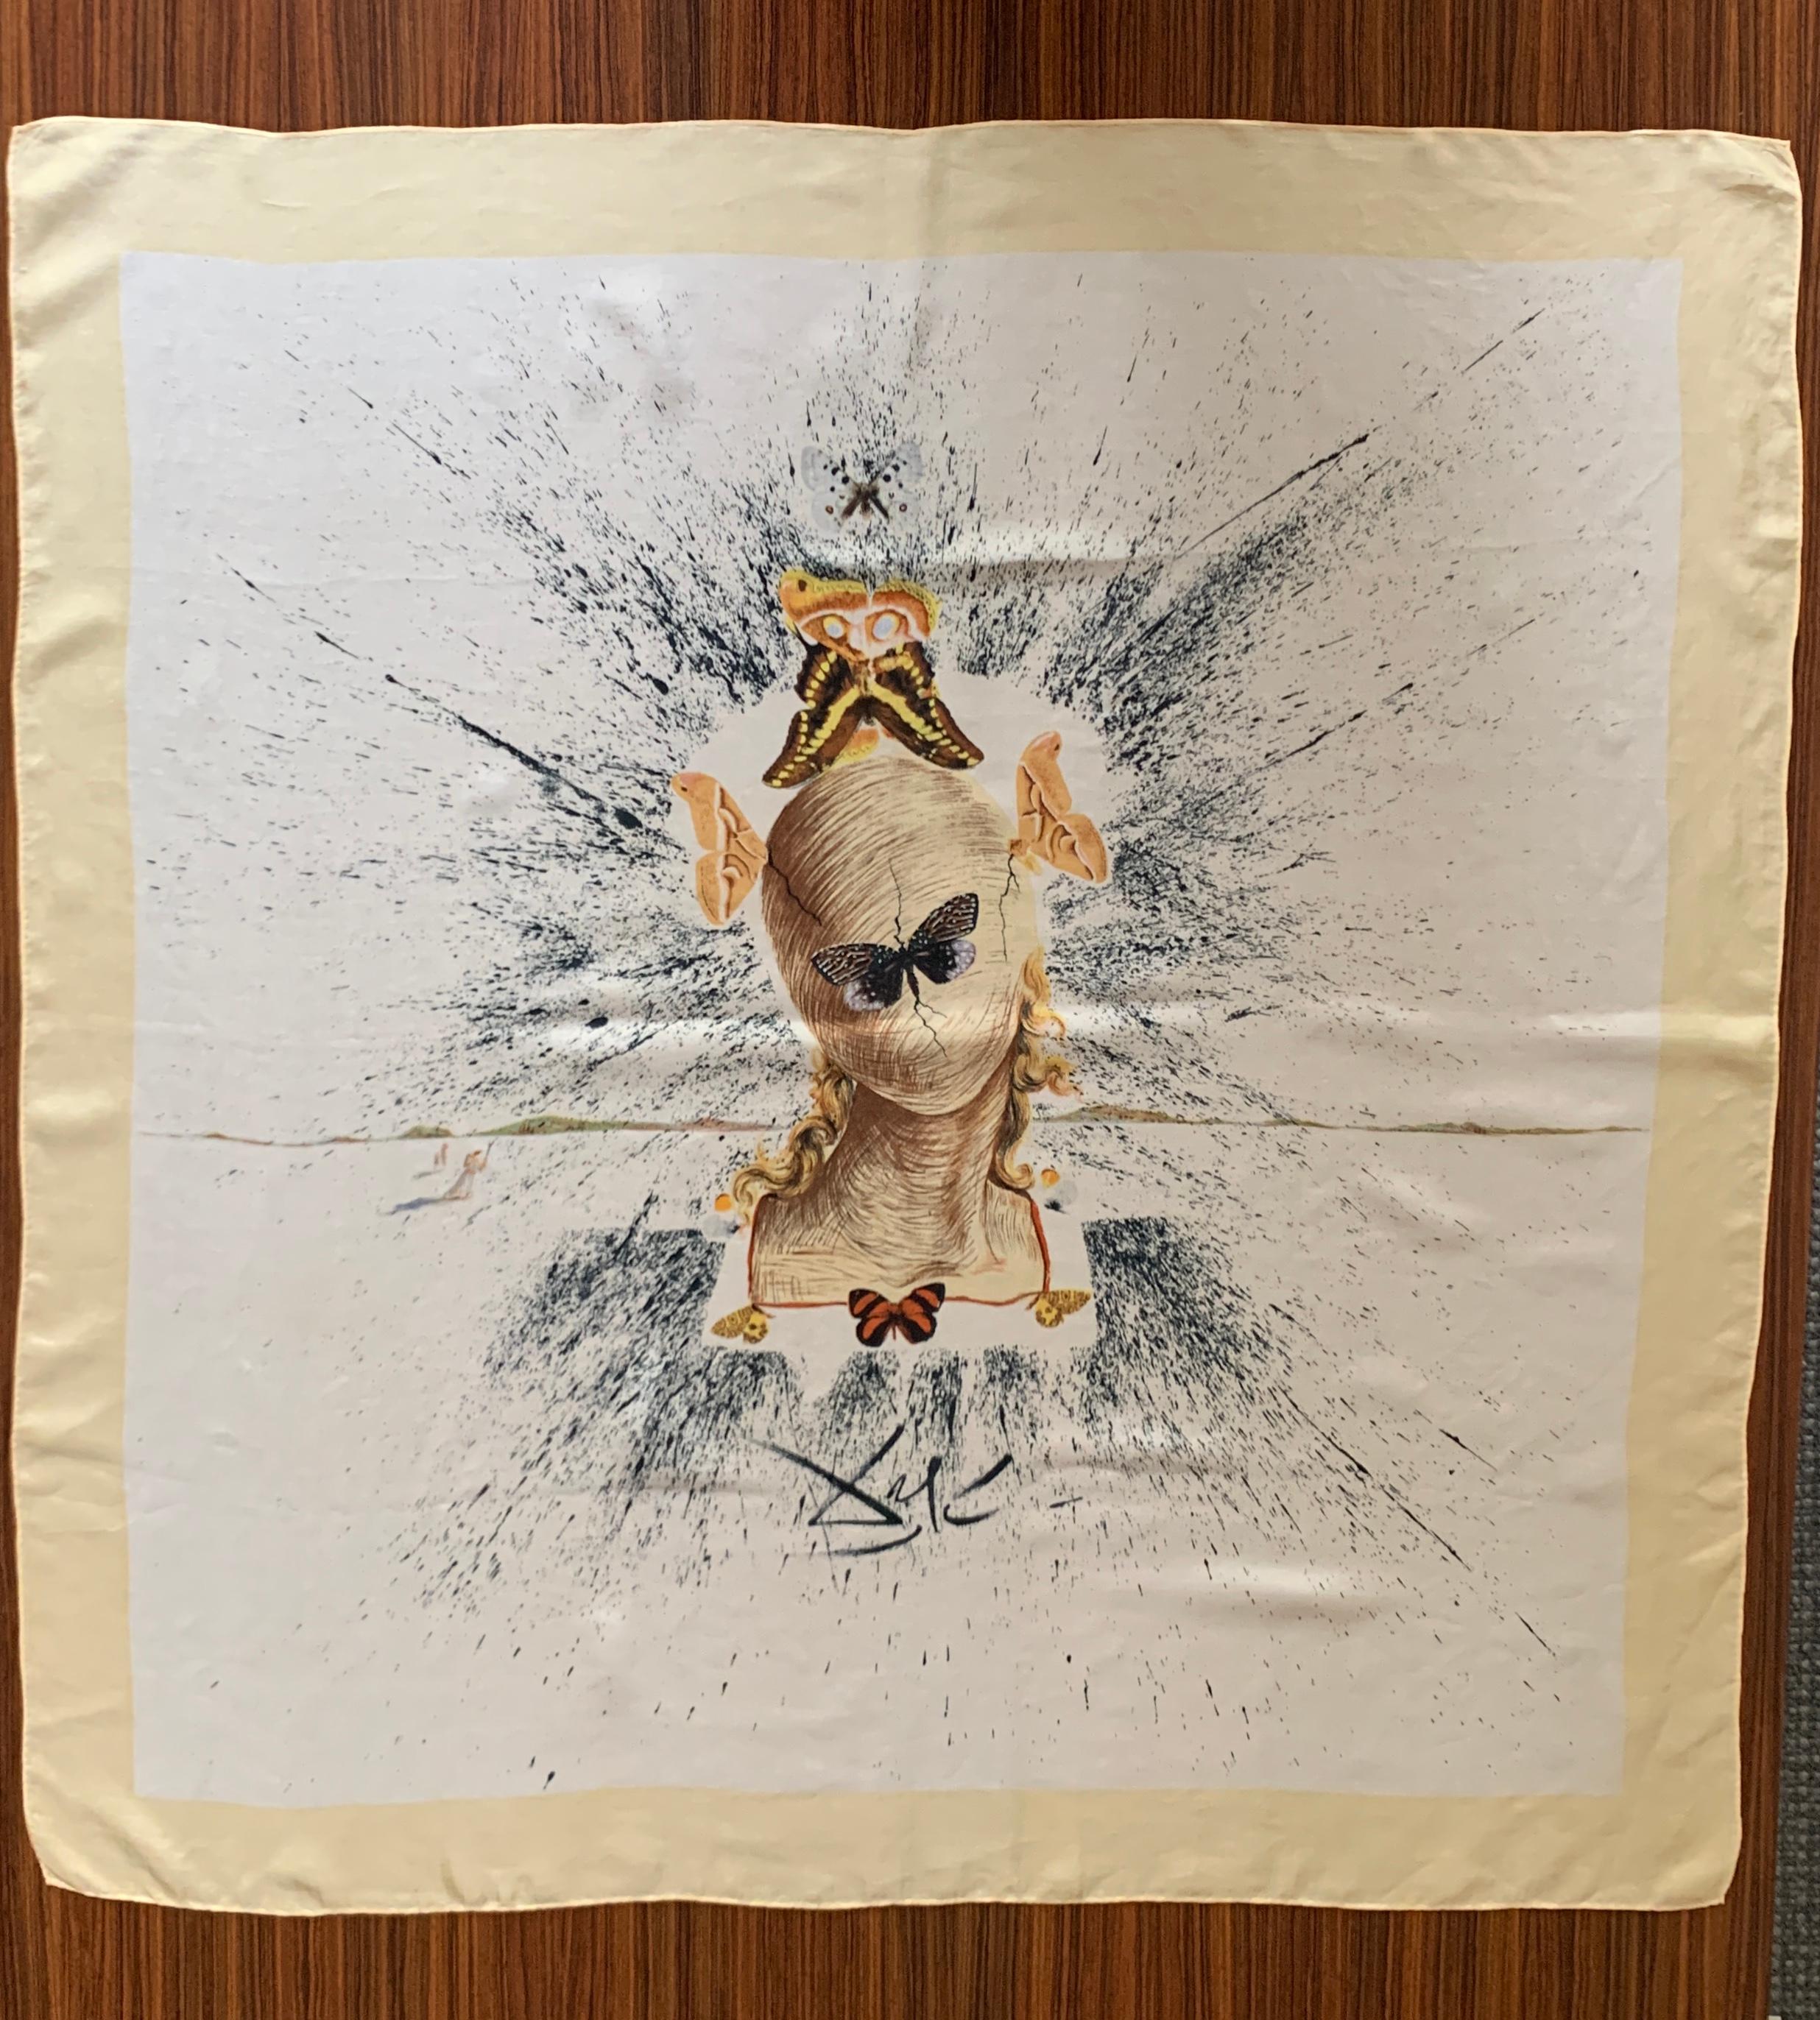 Étonnant foulard en soie de Salvador Dali, conçu pour les participants à la Convention internationale de la soie en 1957. La soie délicate présente une image surréaliste de la tête d'une femme qui a été enveloppée de fils par un groupe de papillons